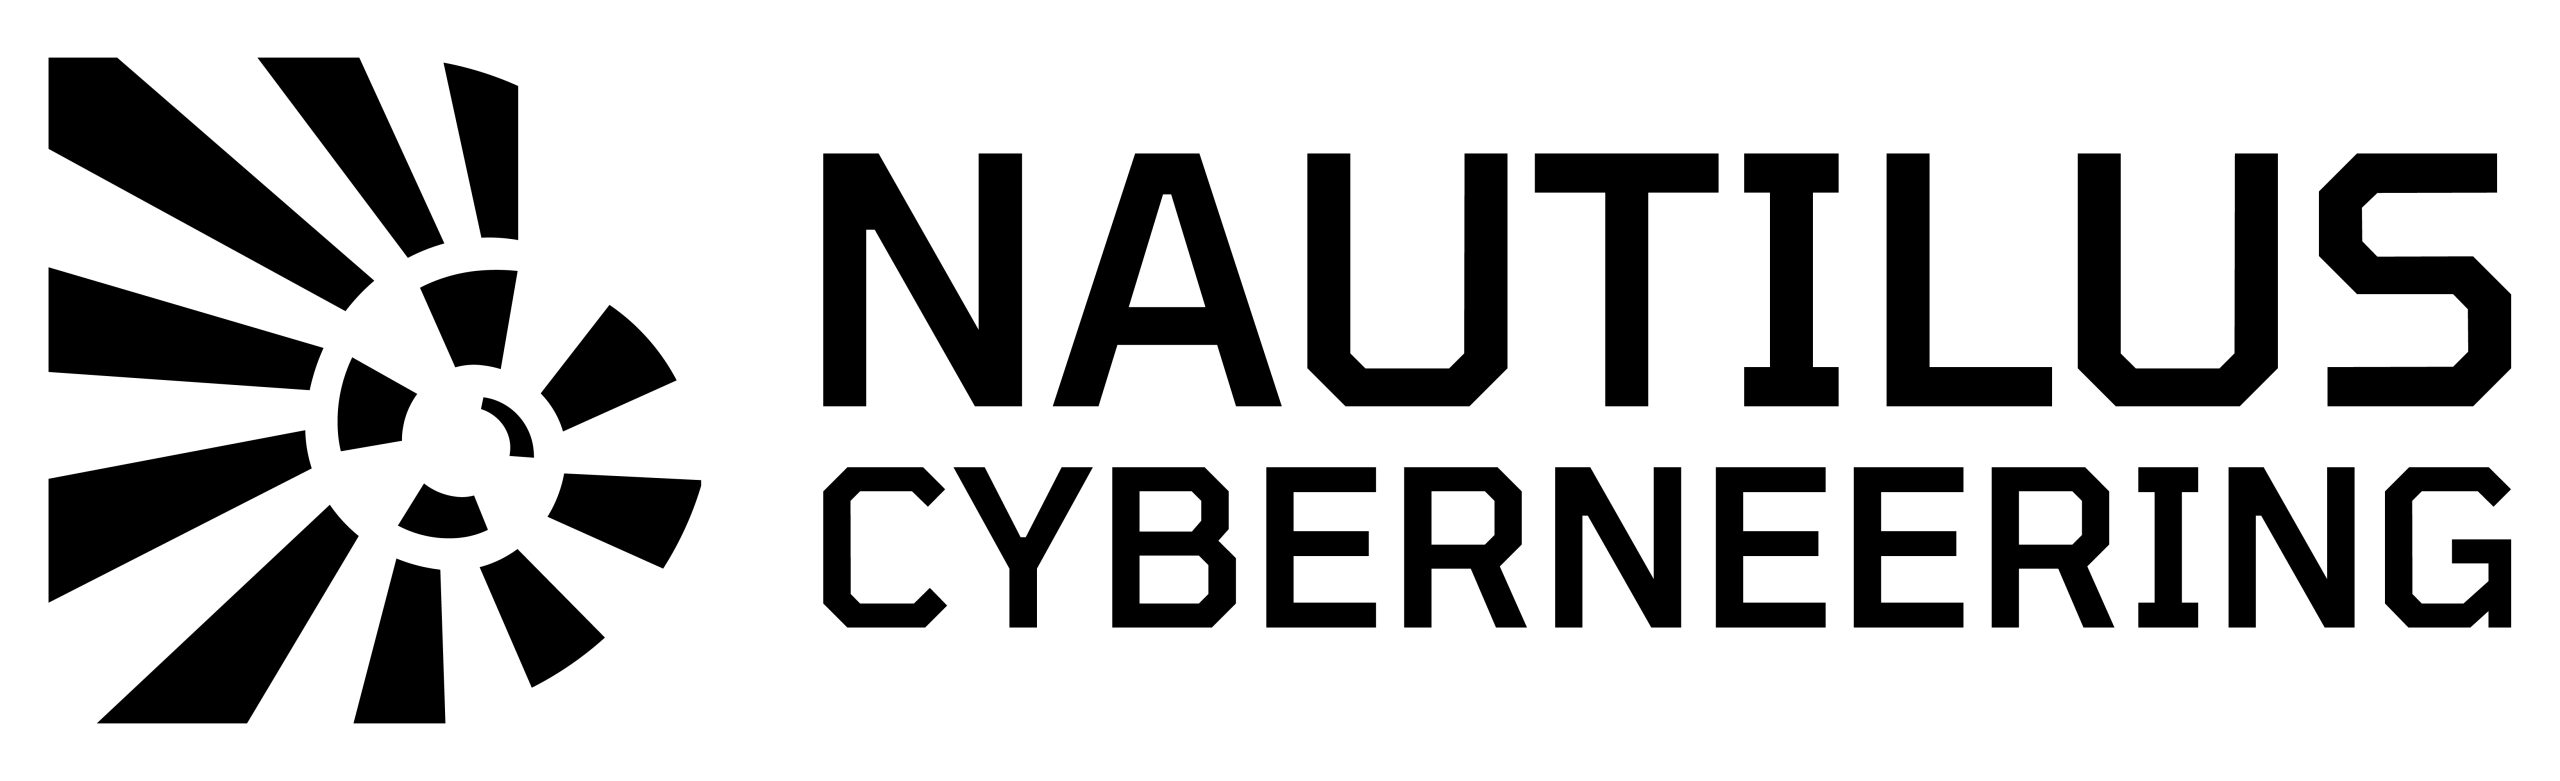 Nautilus Cyberneering